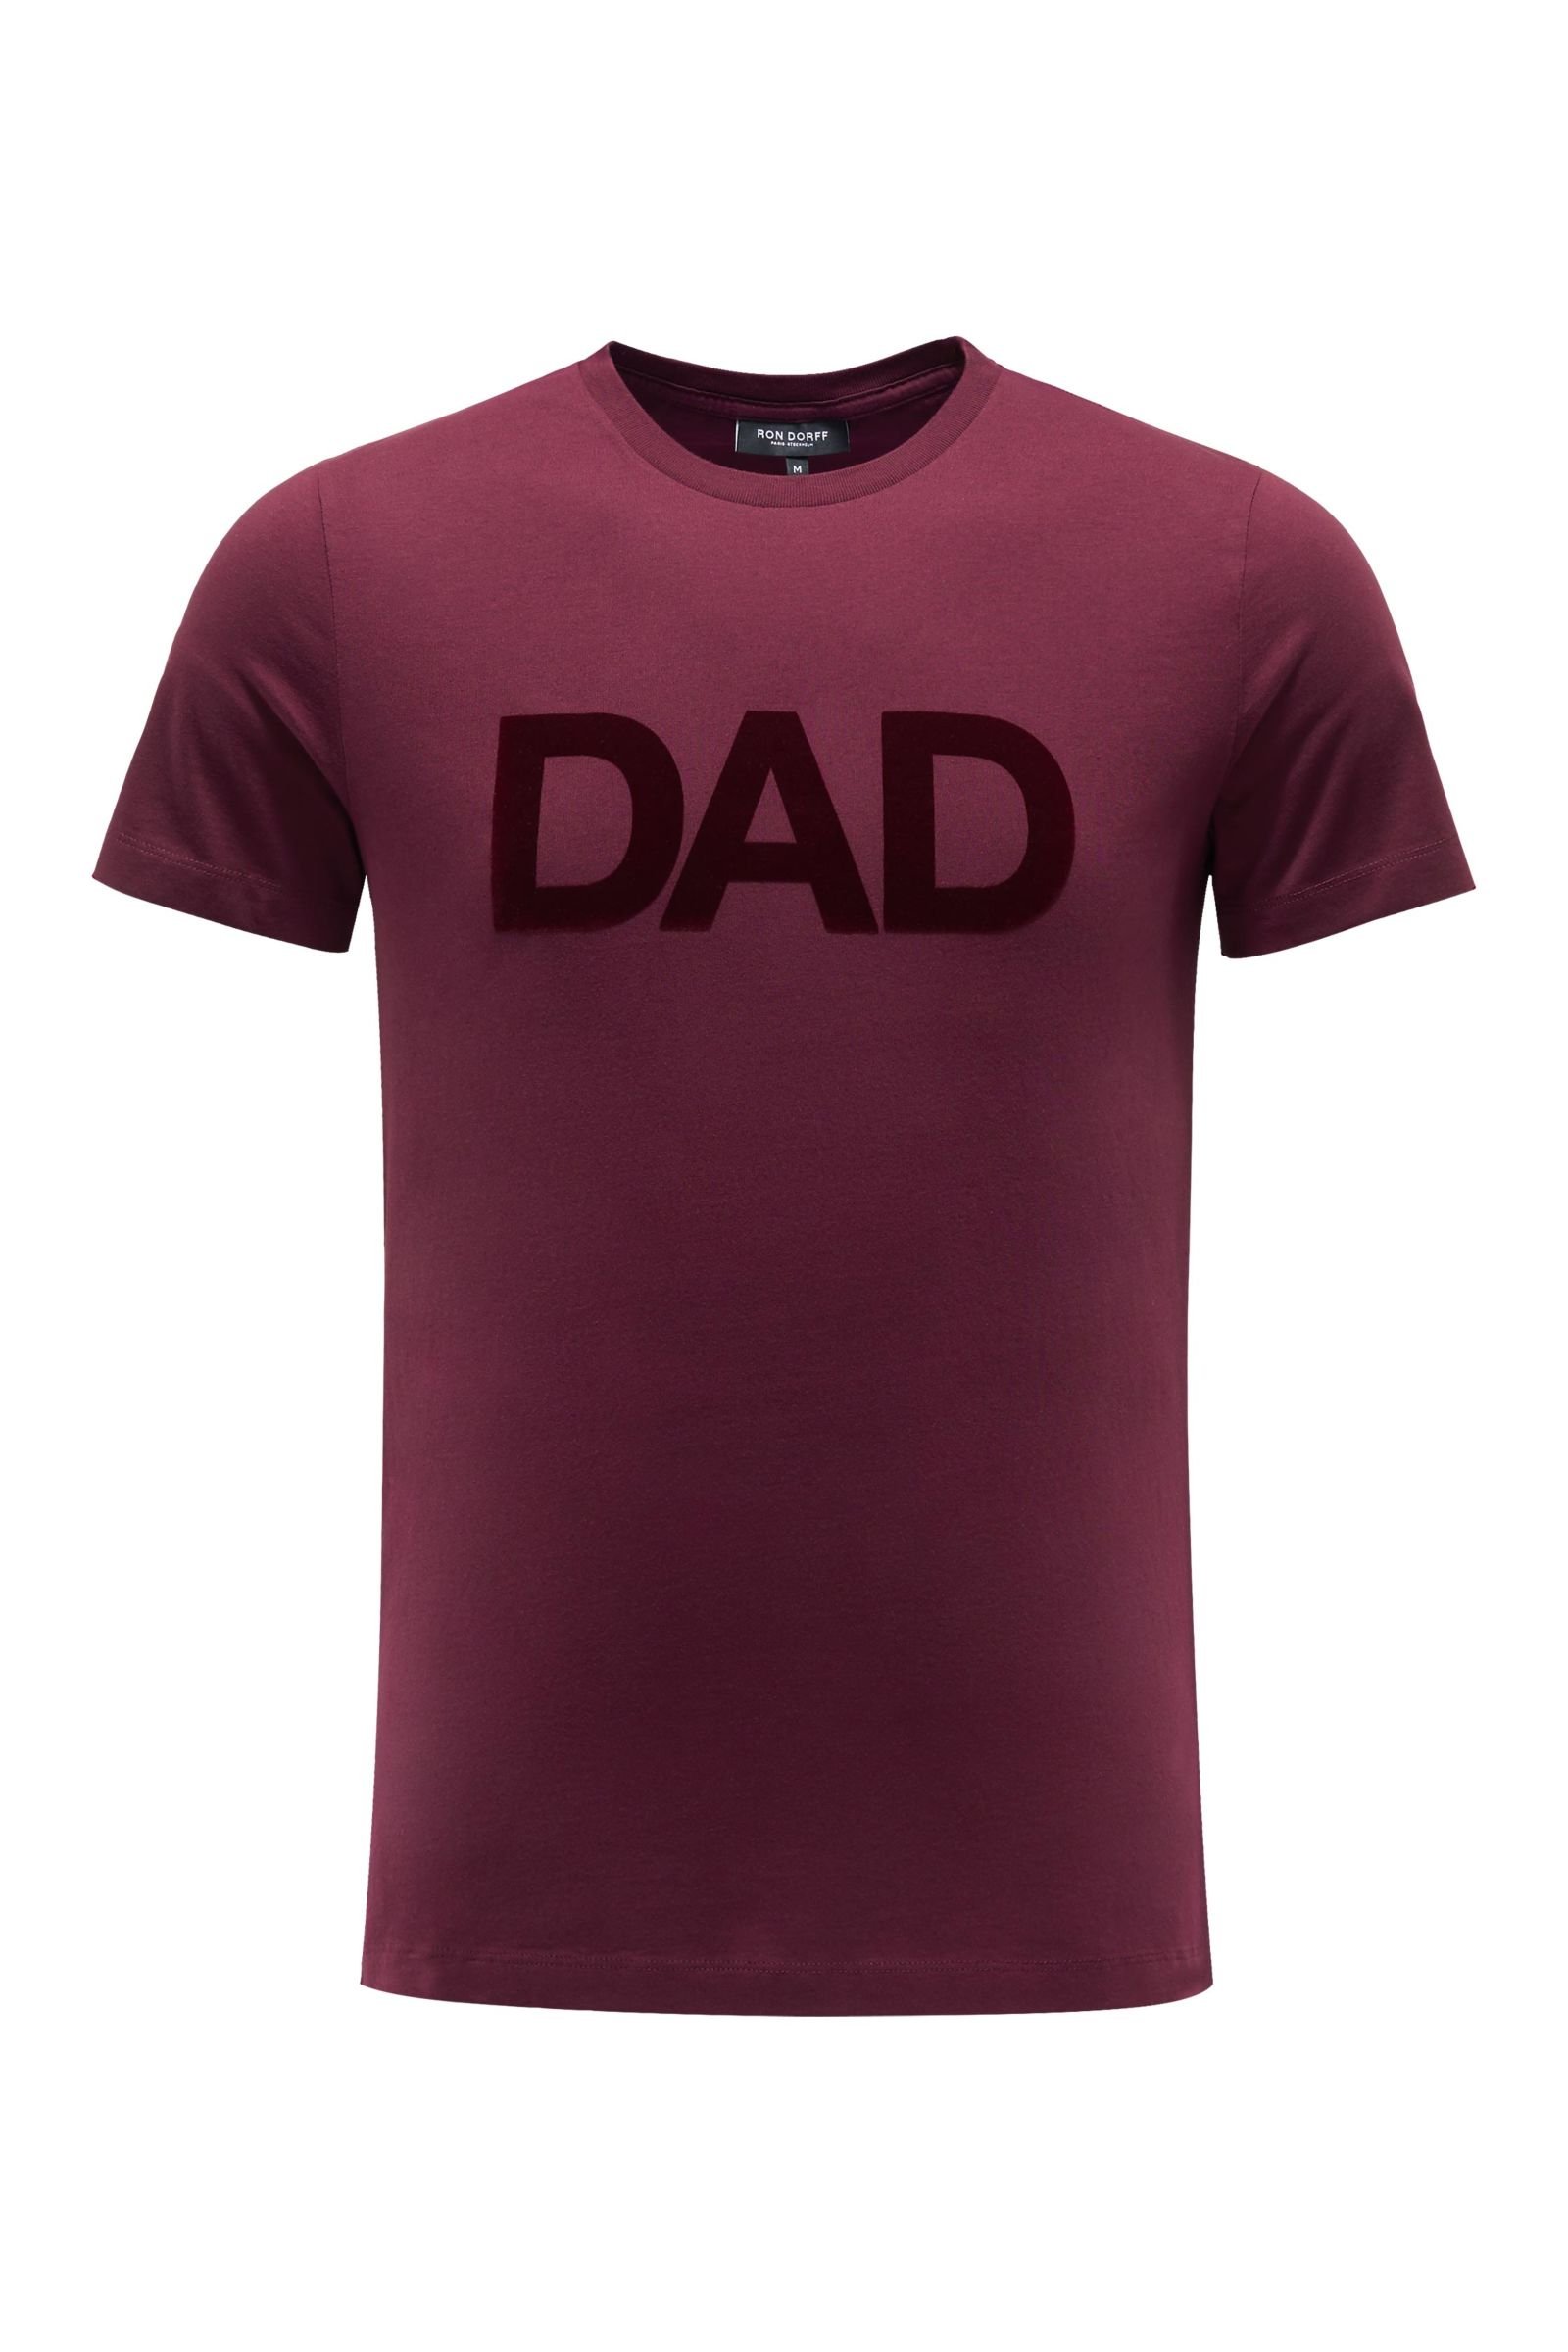 Crew neck T-shirt 'Dad' burgundy